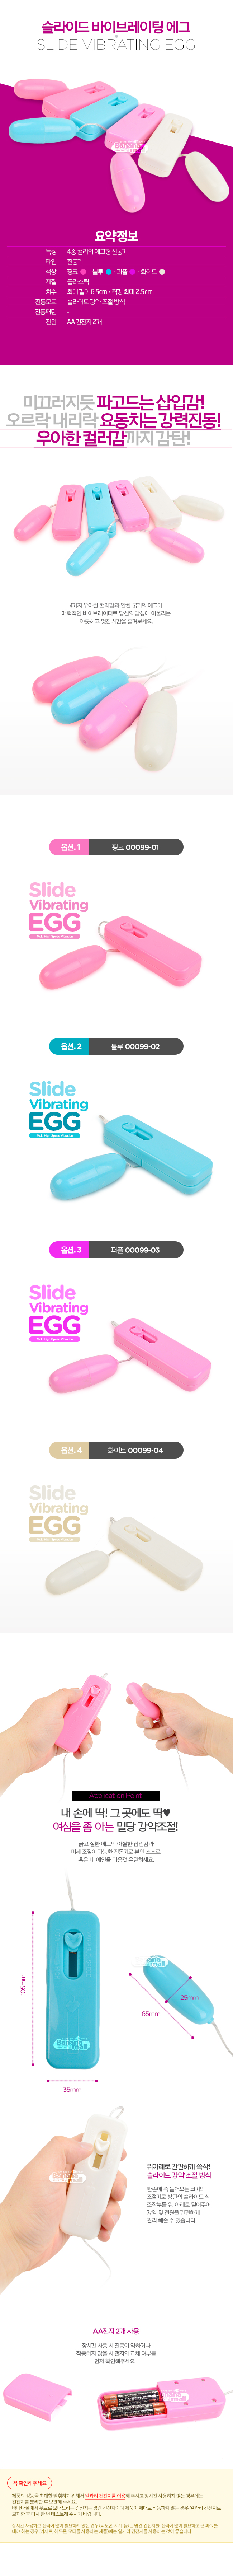 [멀티 스피드] 슬라이드 바이브레이팅 에그(Slide Vibrating Egg) - 00099